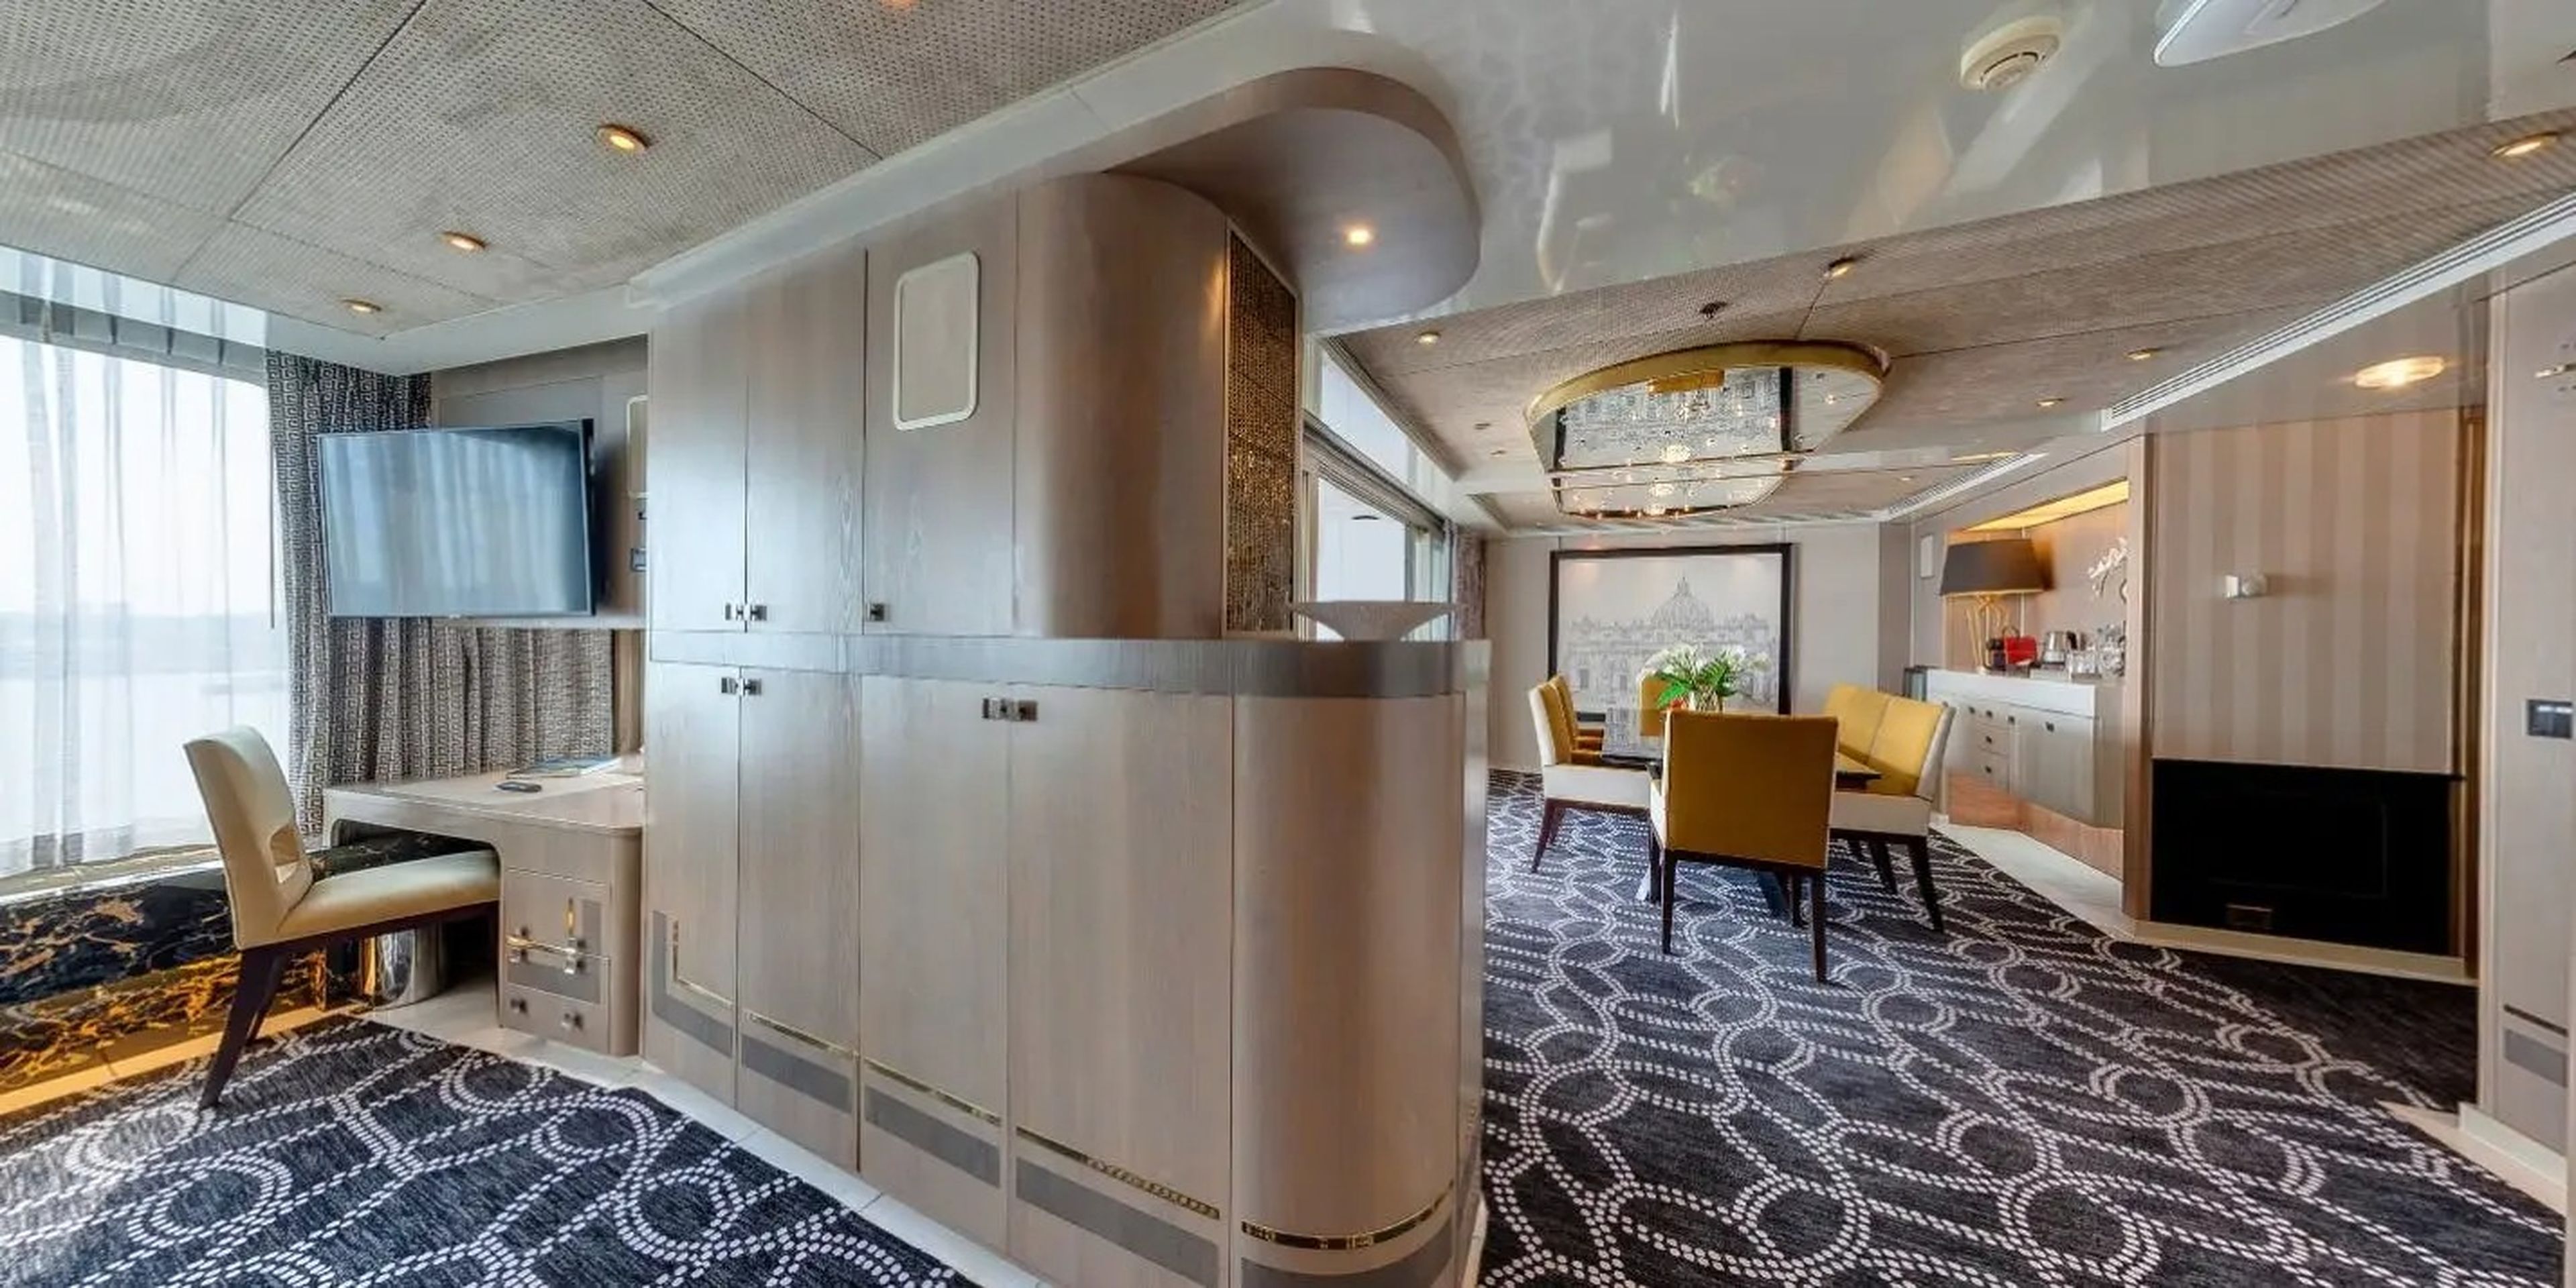 La más lujosa, la Pinnacle Suite, de 118 metros cuadrados, cuenta con instalaciones de lujo como bañera, comedor privado y balcón. El alquiler es de 21.000 dólares (19.200 euros) al mes para viajeros con un contrato mínimo de 37 meses.